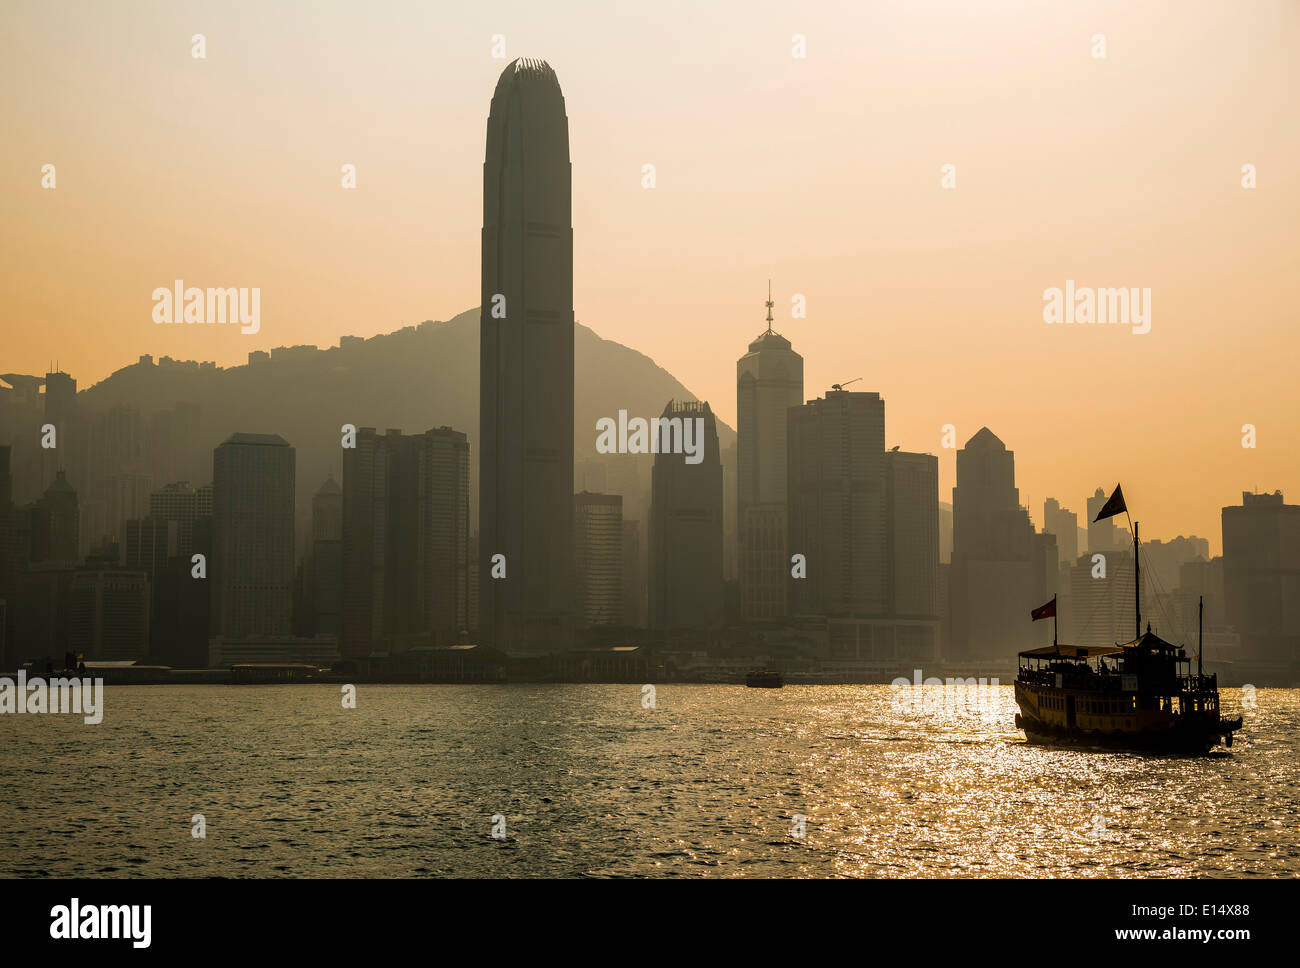 Junk en face de la skyline de l'île de Hong Kong avec les deux gratte-ciel International Finance Centre, 2, en face de l'IFC Banque D'Images